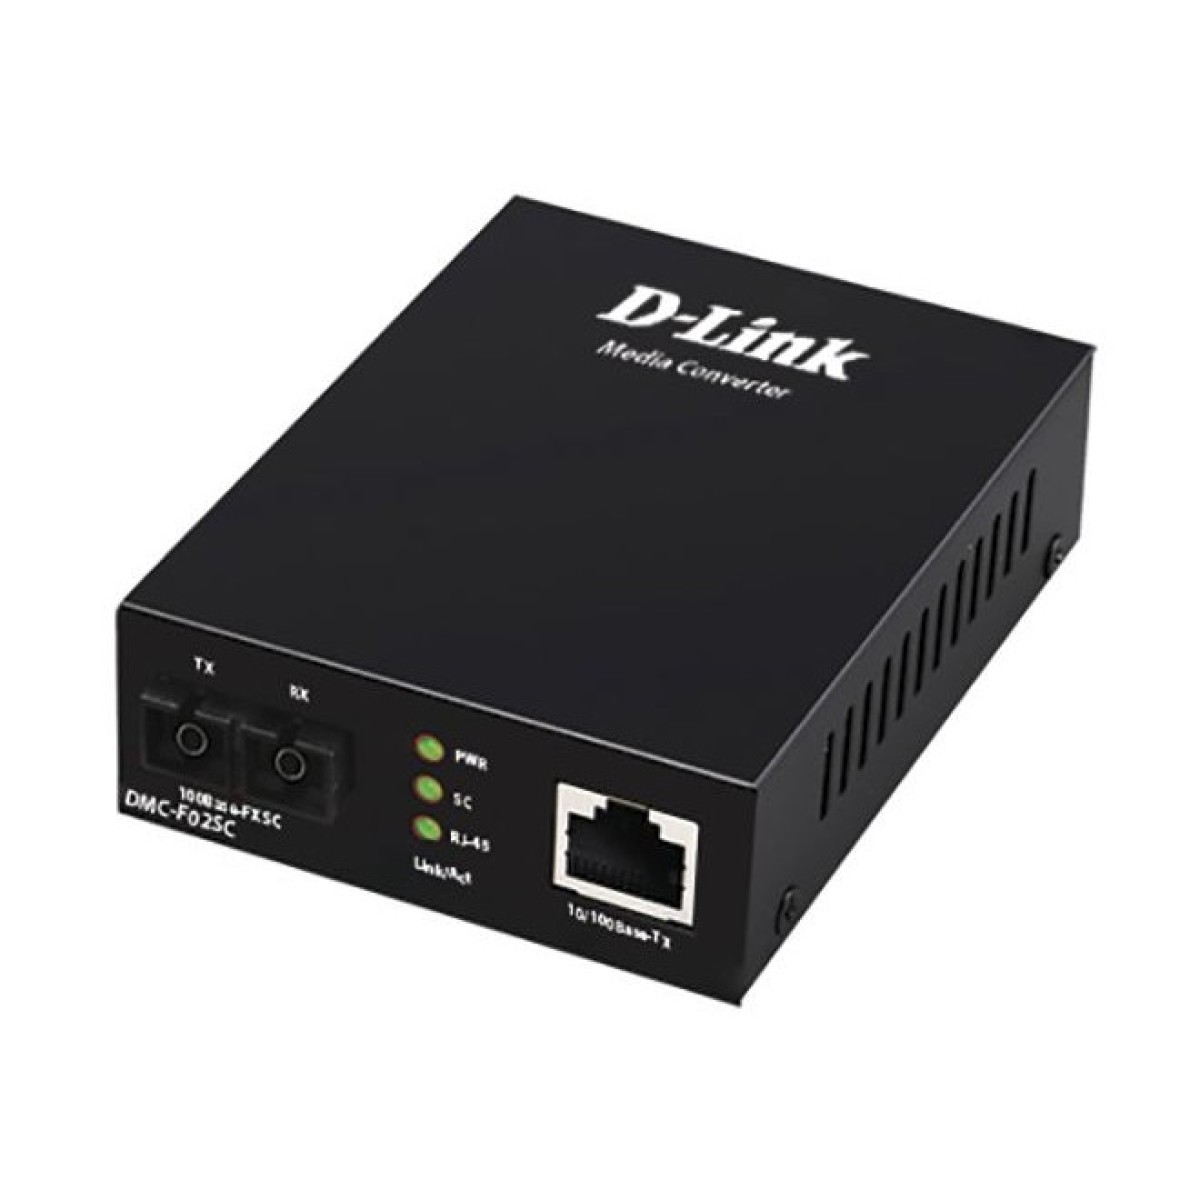 Медиаконвертер D-Link DMC-F02SC 256_256.jpg